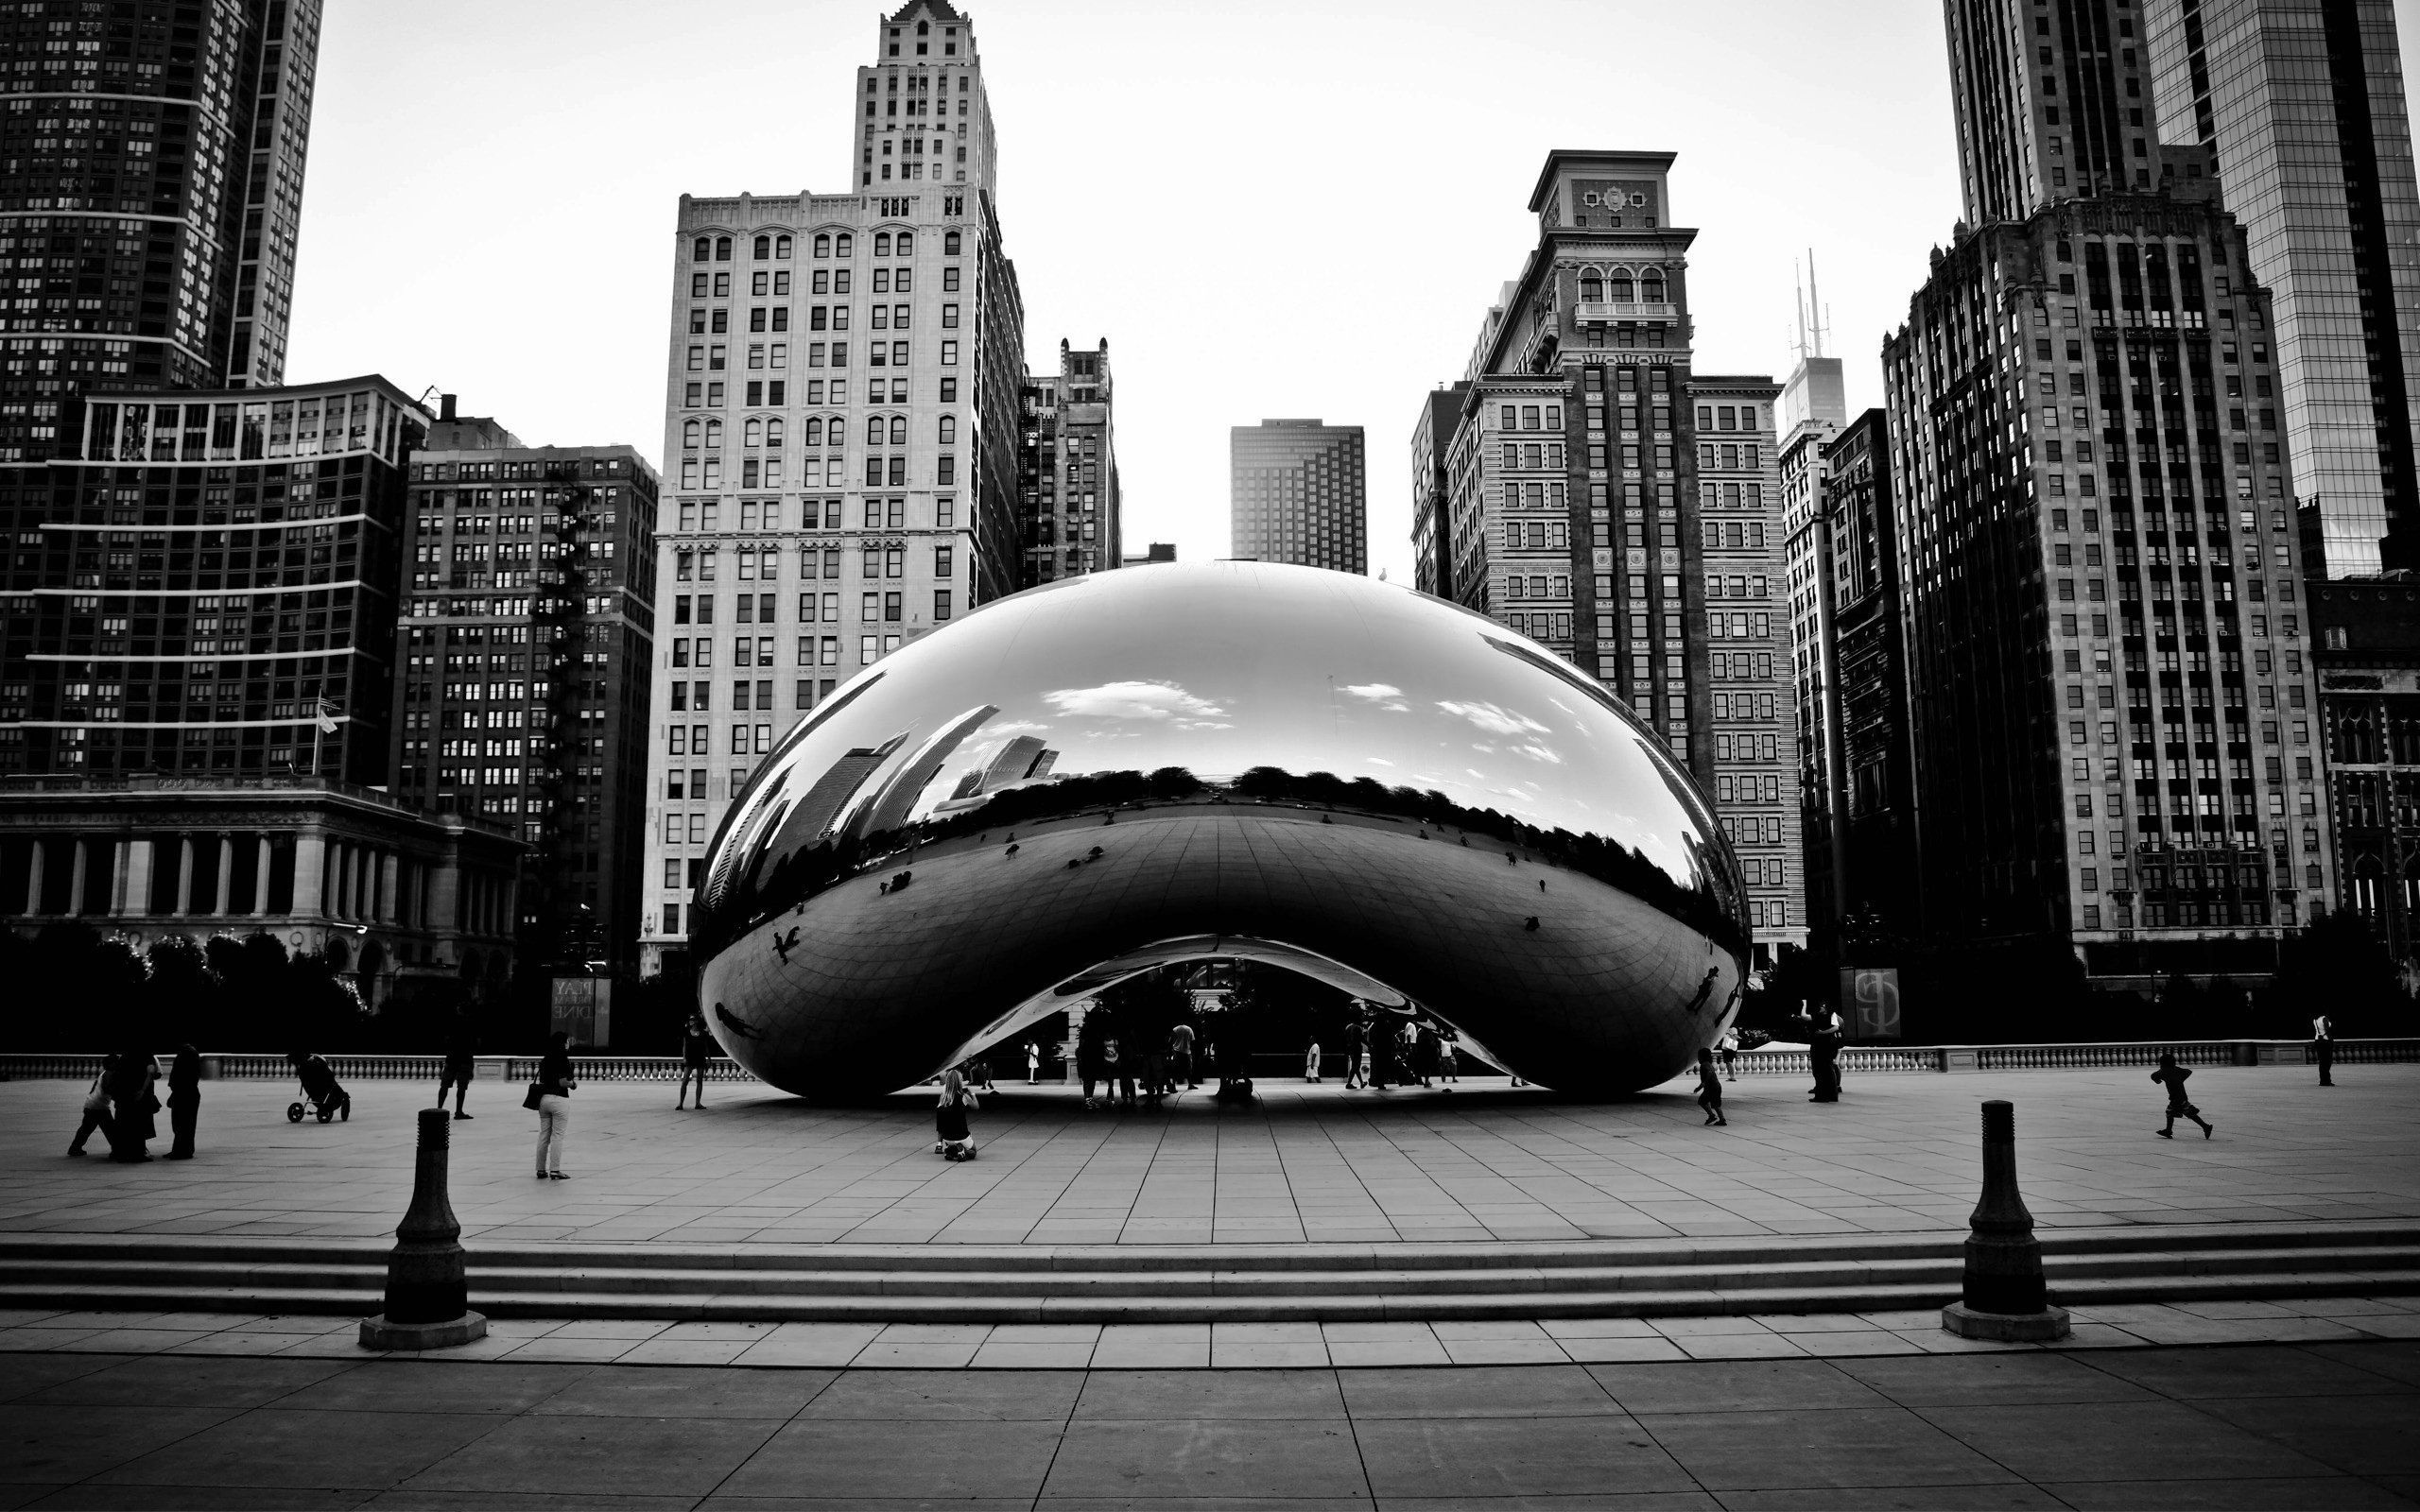 Chicago wallpaper, Millennium Park view, Cloud Gate sculpture, City attraction, 2560x1600 HD Desktop